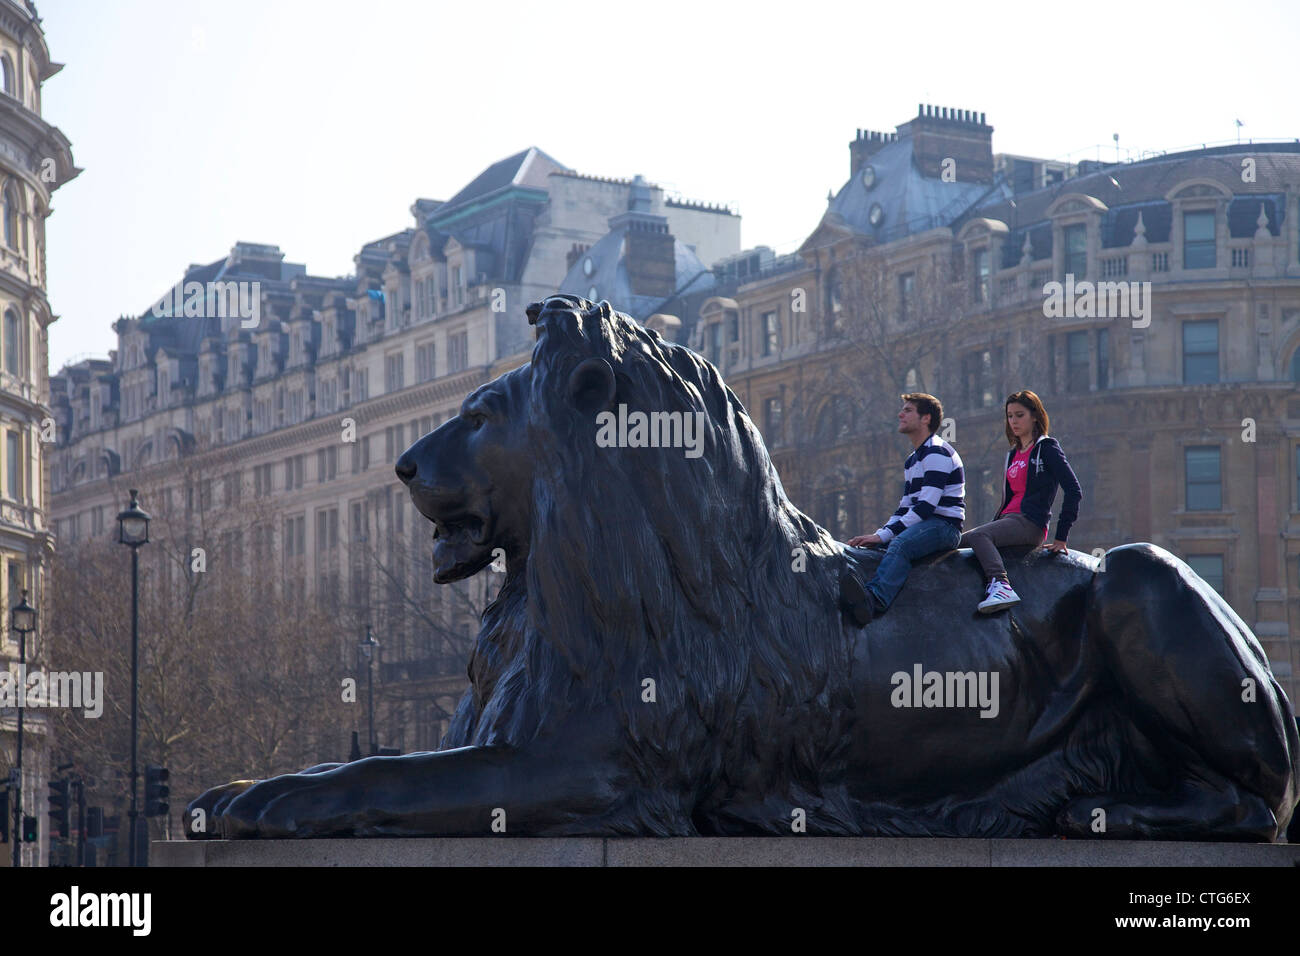 Jugendliche auf der Rückseite ein Löwe aus Bronze Statue, Trafagar Square, London, England, UK, Vereinigtes Königreich, britische Inseln, GB Stockfoto